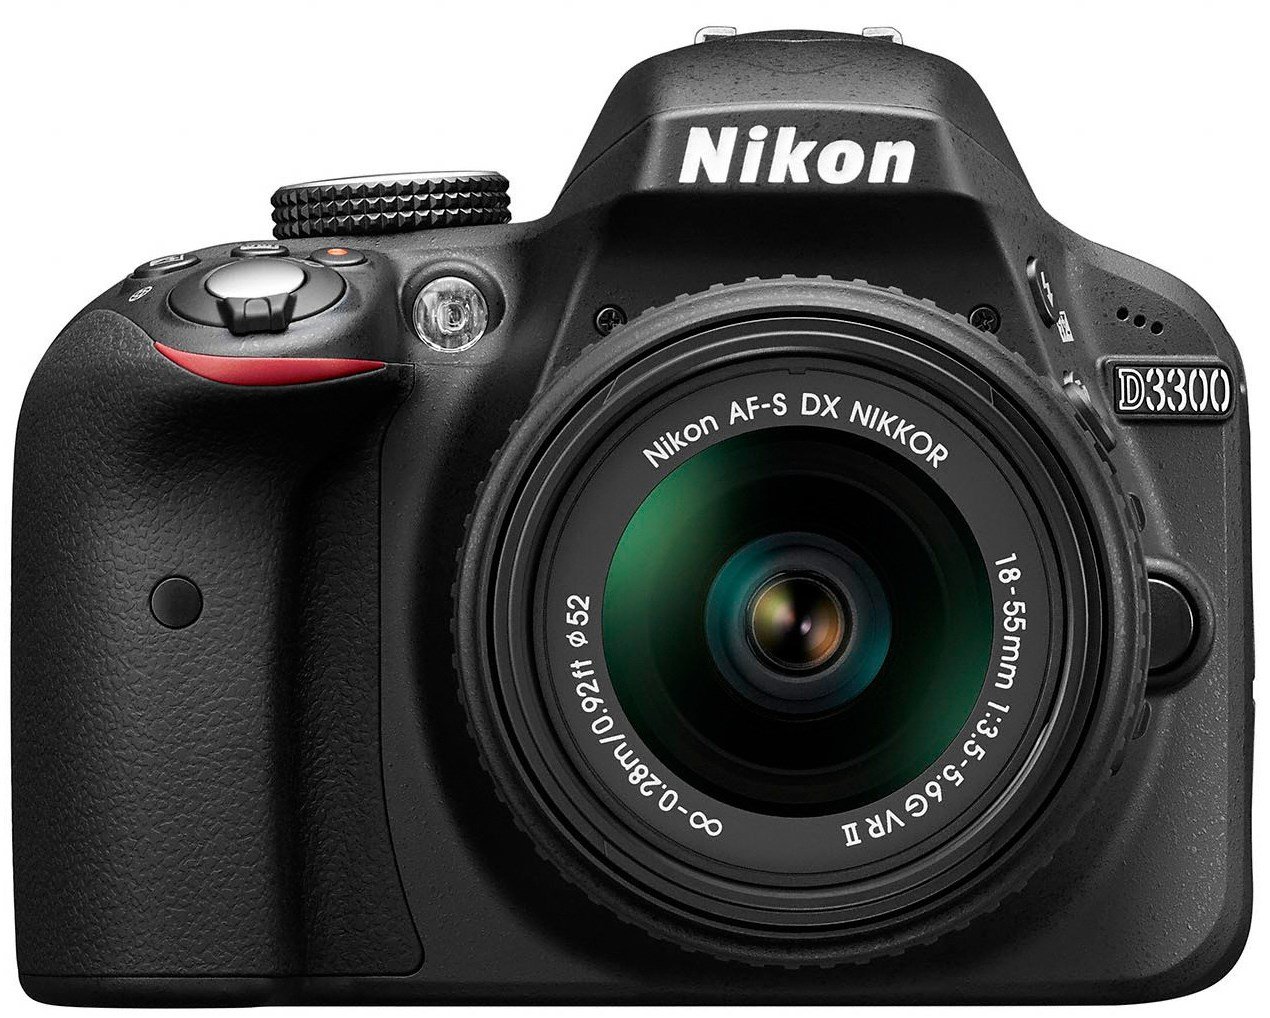 Nikon D3300 DSLR Camera with 1